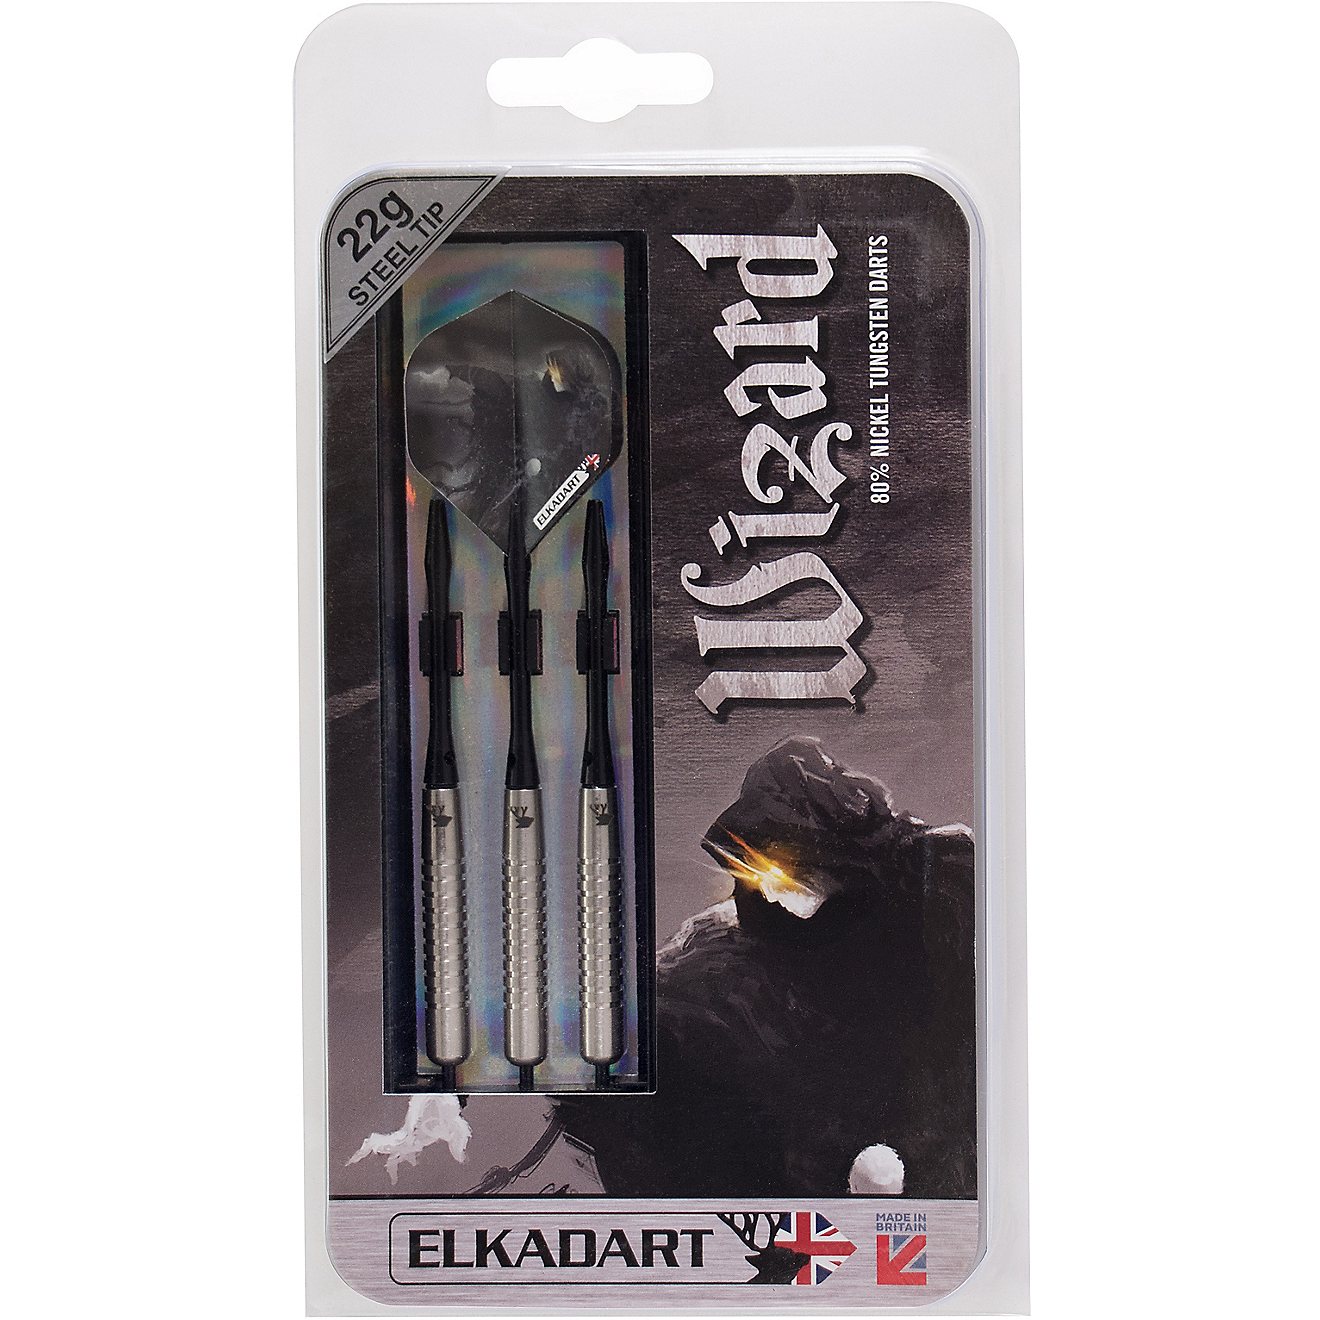 Elkadart Wizard 22 g Tungsten Steel-Tip Darts 3-Pack                                                                             - view number 4